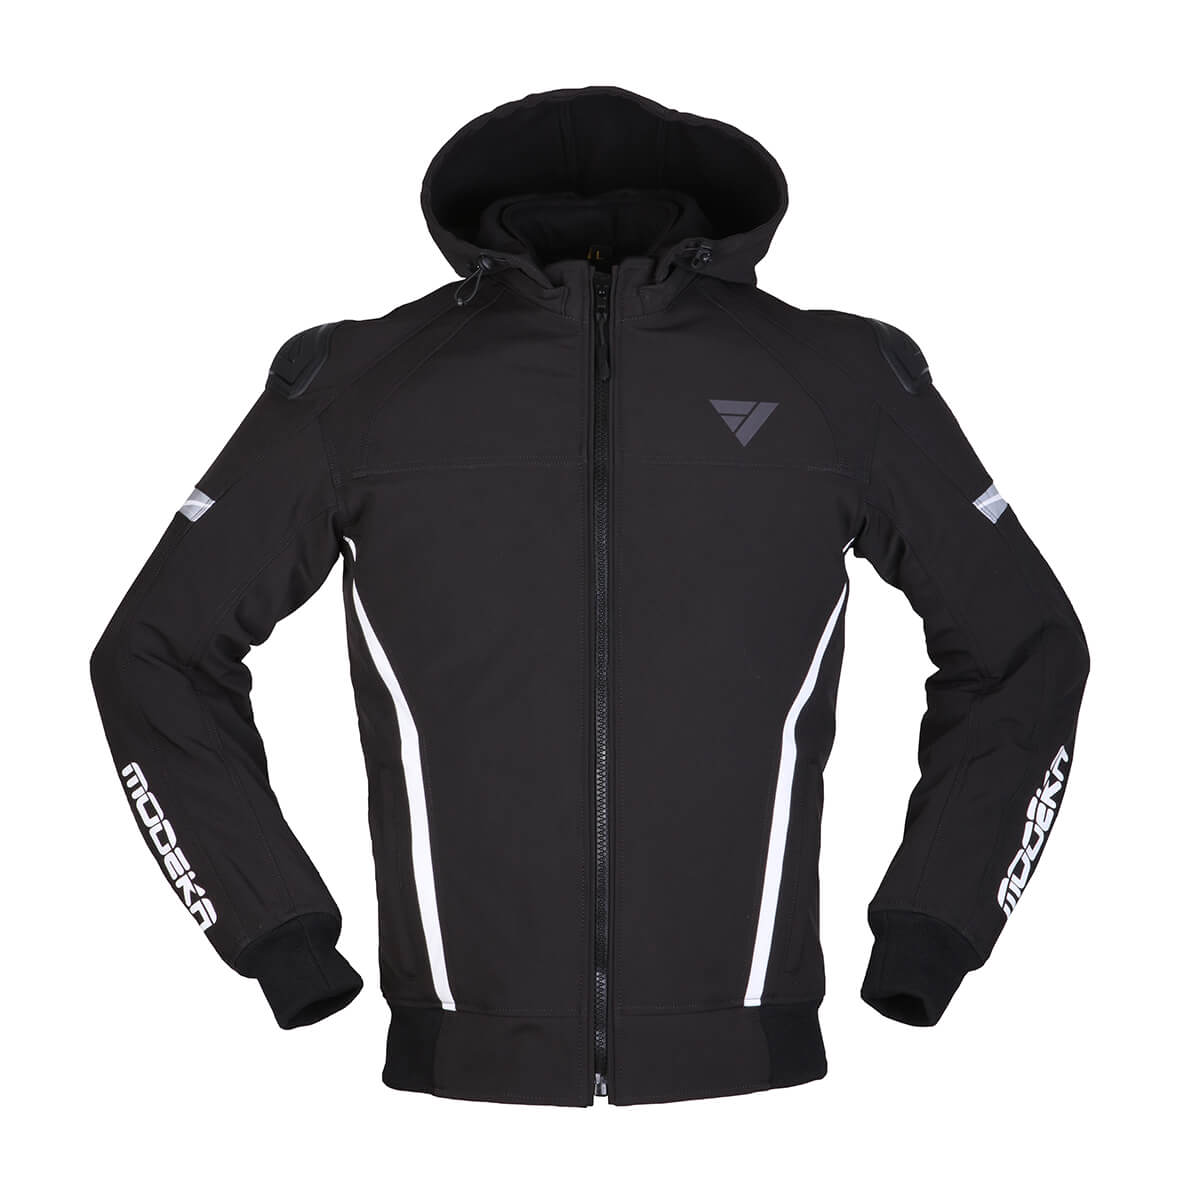 Image of Modeka Clarke Sport Jacket Black White Size 3XL ID 4045765189528